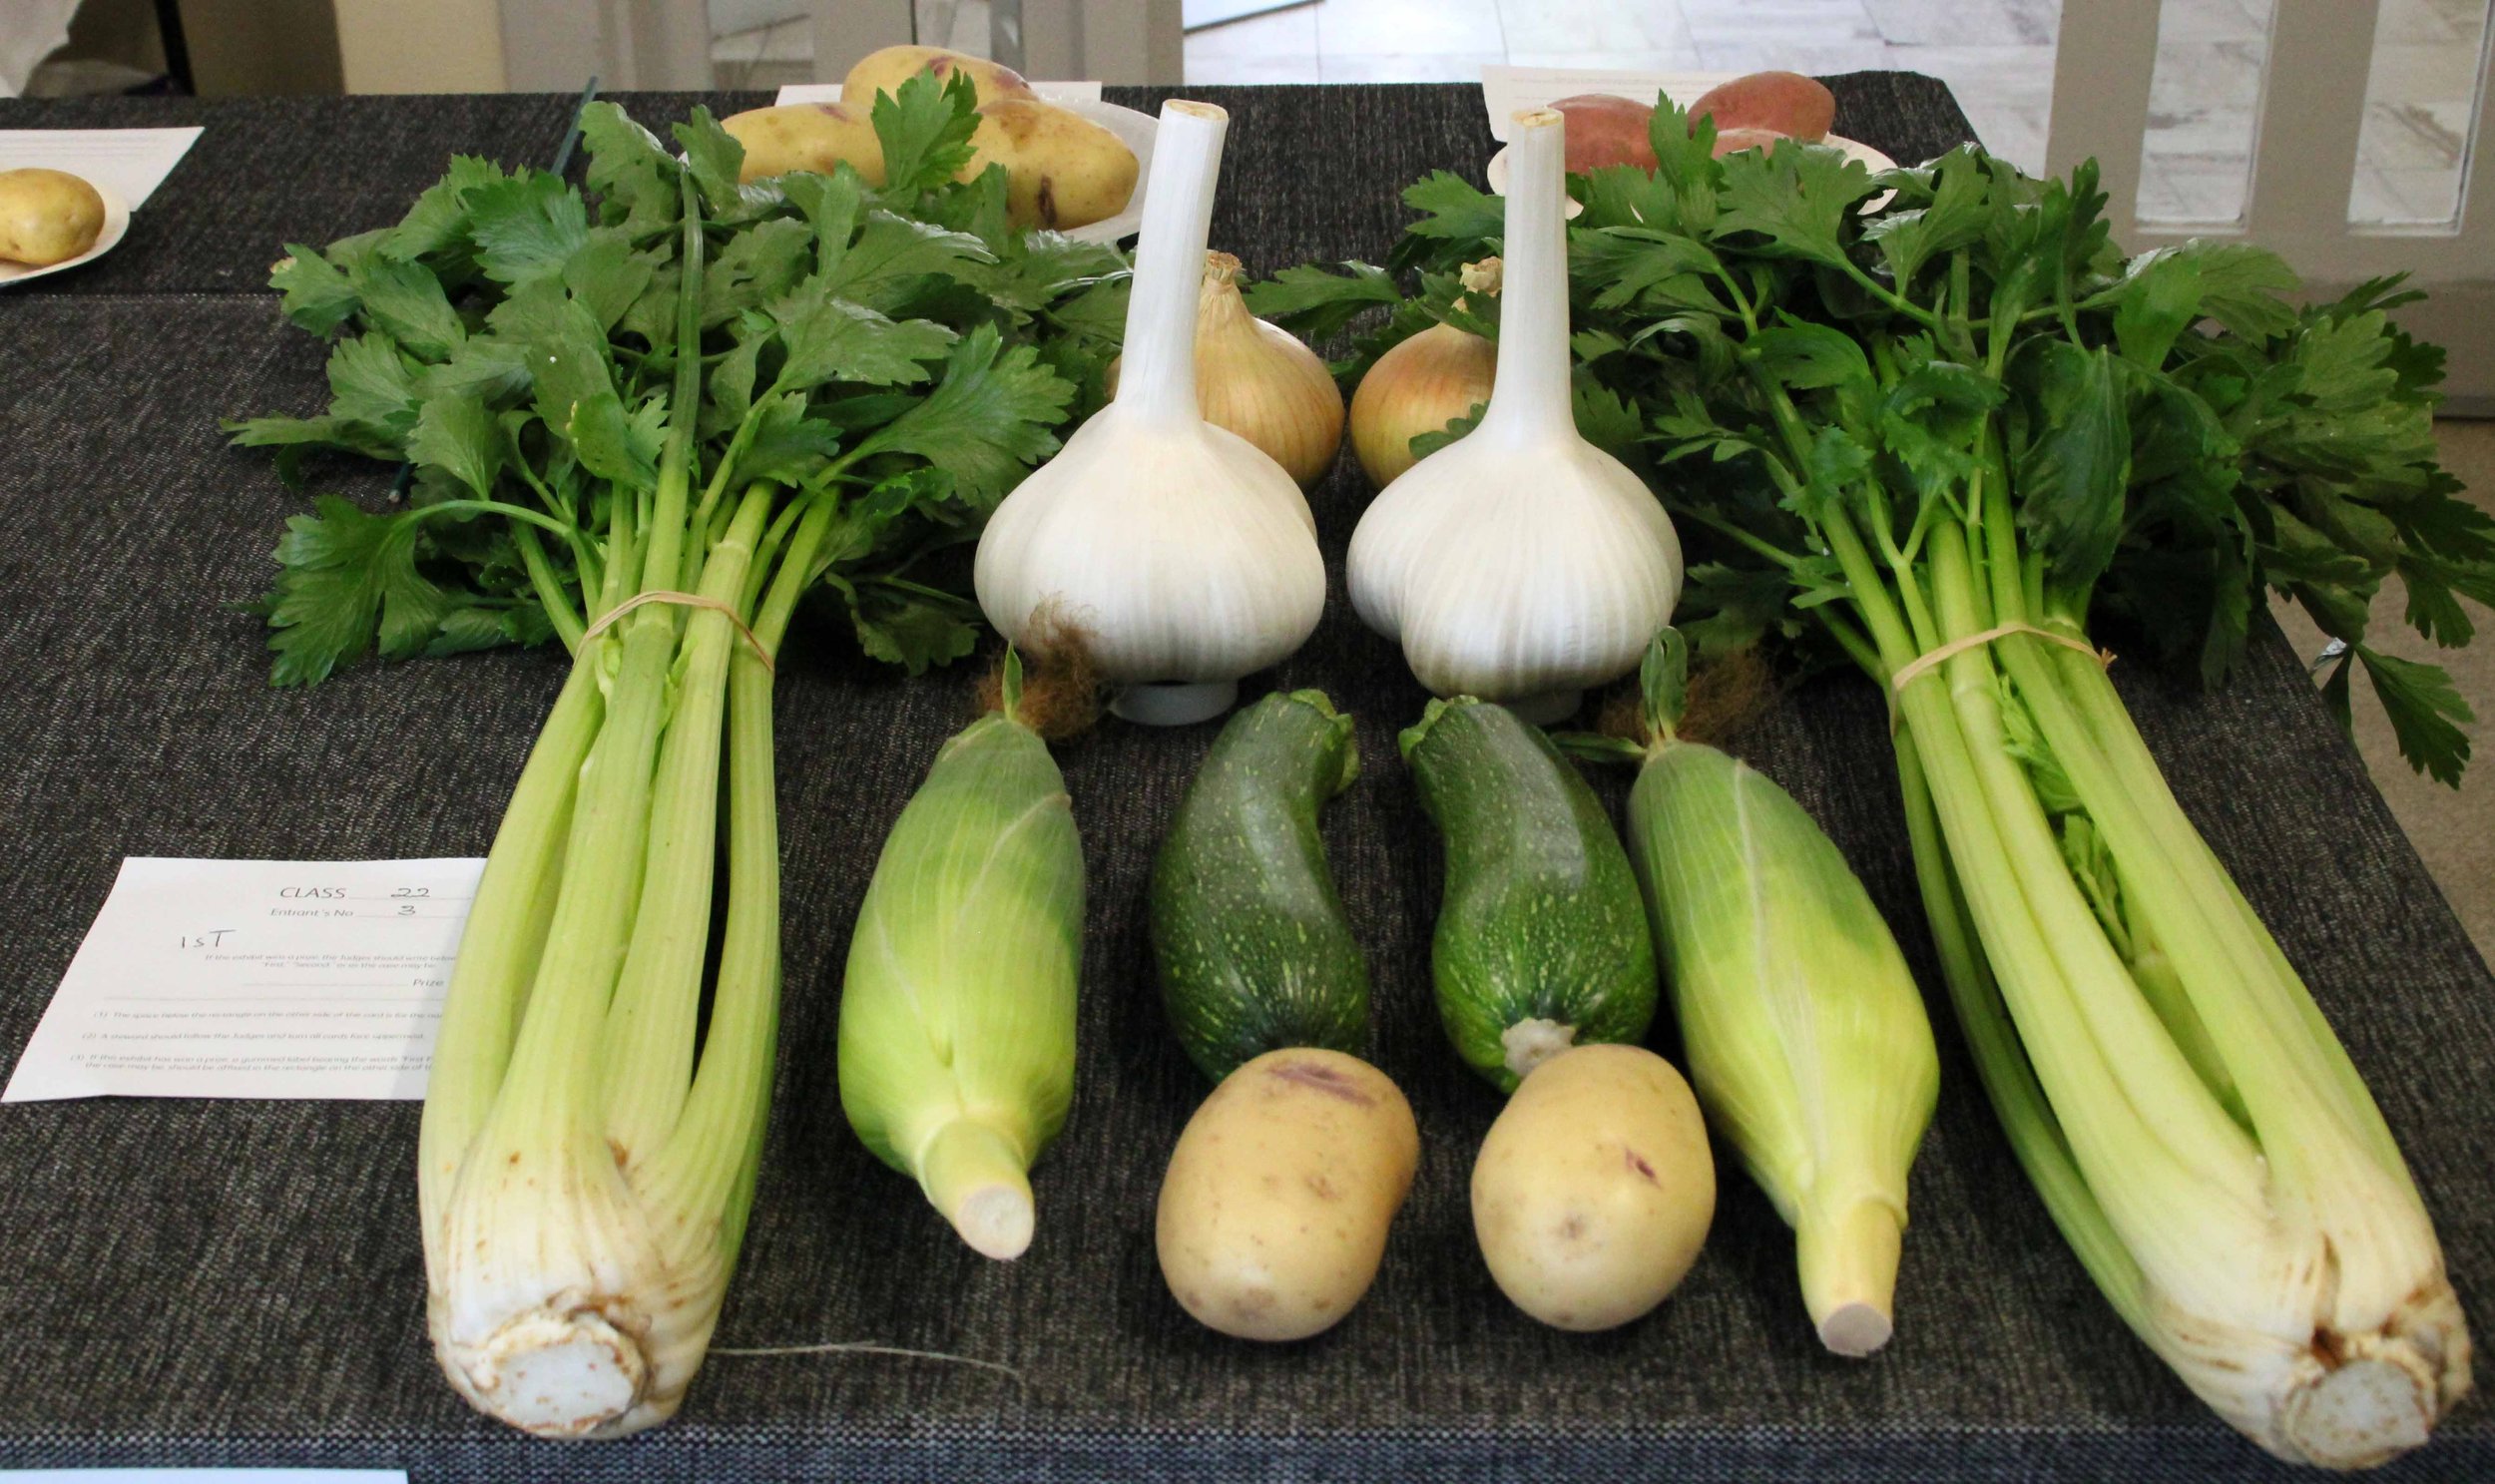 2 each of six vegetables.jpg